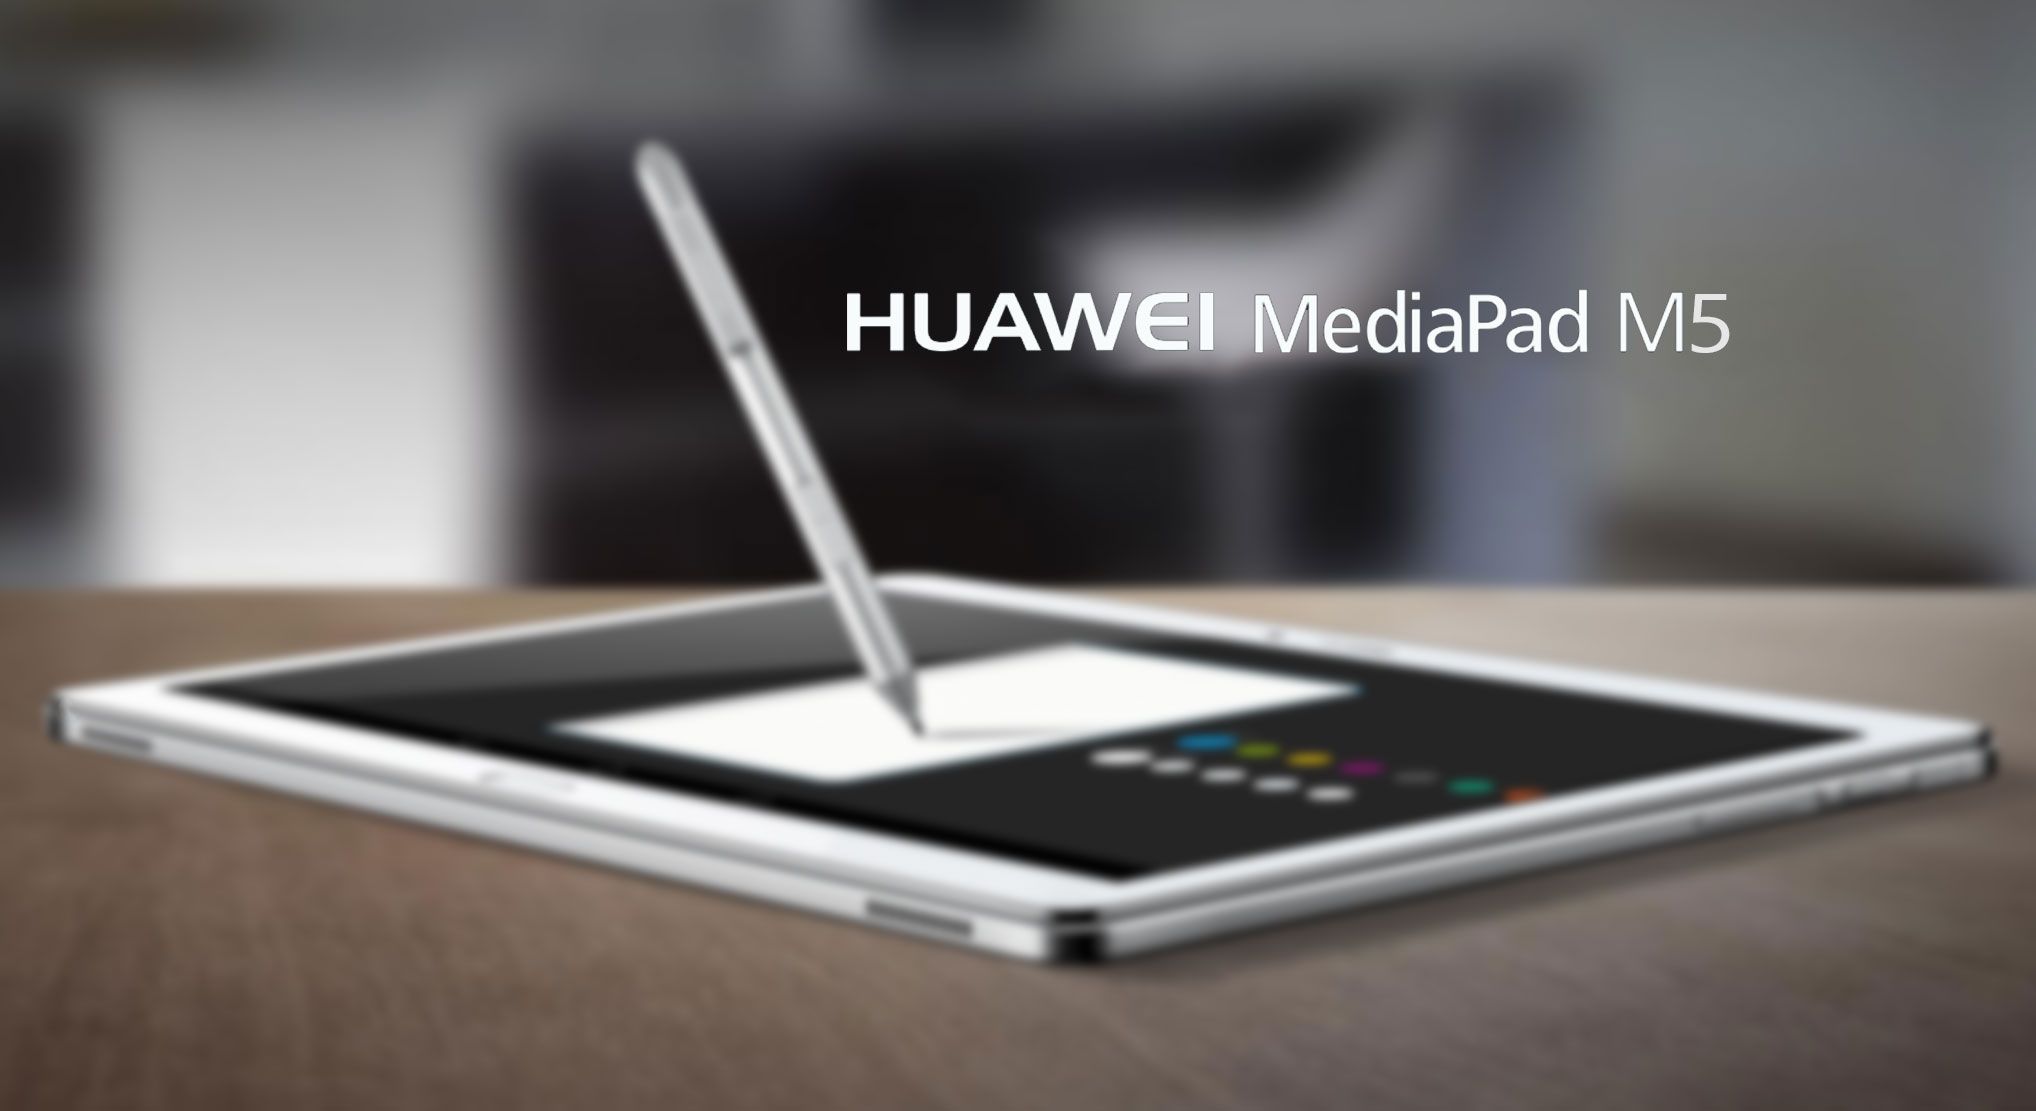 คาด Huawei เปิดตัว MediaPad M5 ทั้งหมด 3 รุ่น 8 นิ้ว, 10 นิ้ว และรุ่น Pro รองรับ M-Pen Stylus